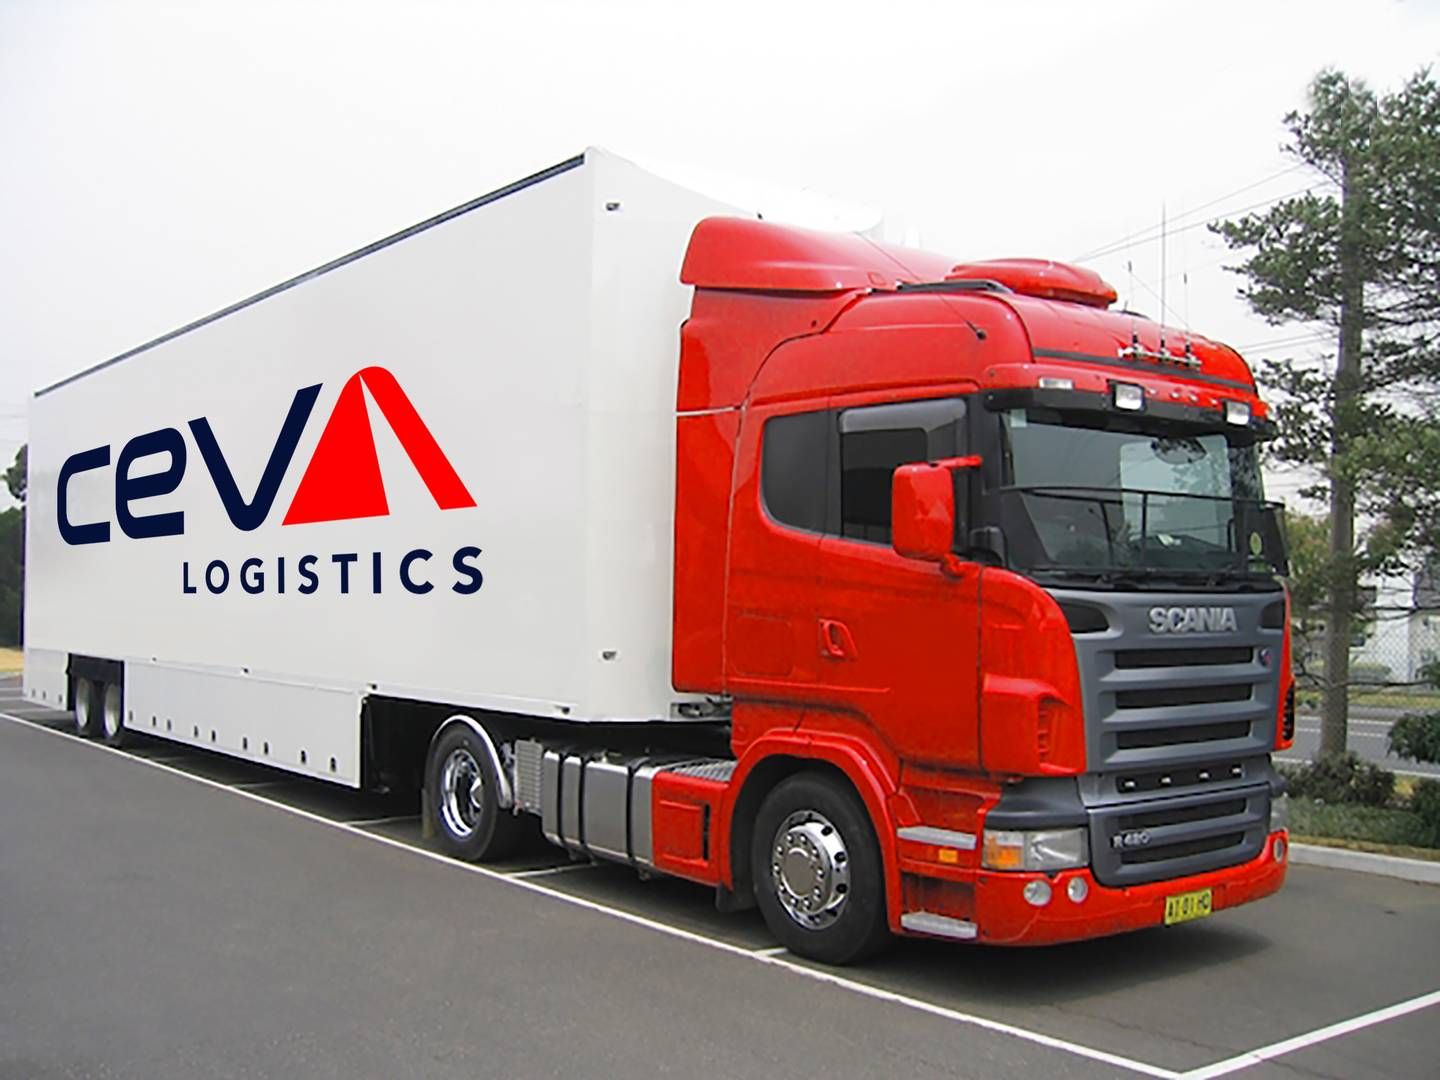 Ceva er ved flere lejligheder blevet udsat for svindel i Europa og Nordamerika | Foto: Ceva Logistics - Pr